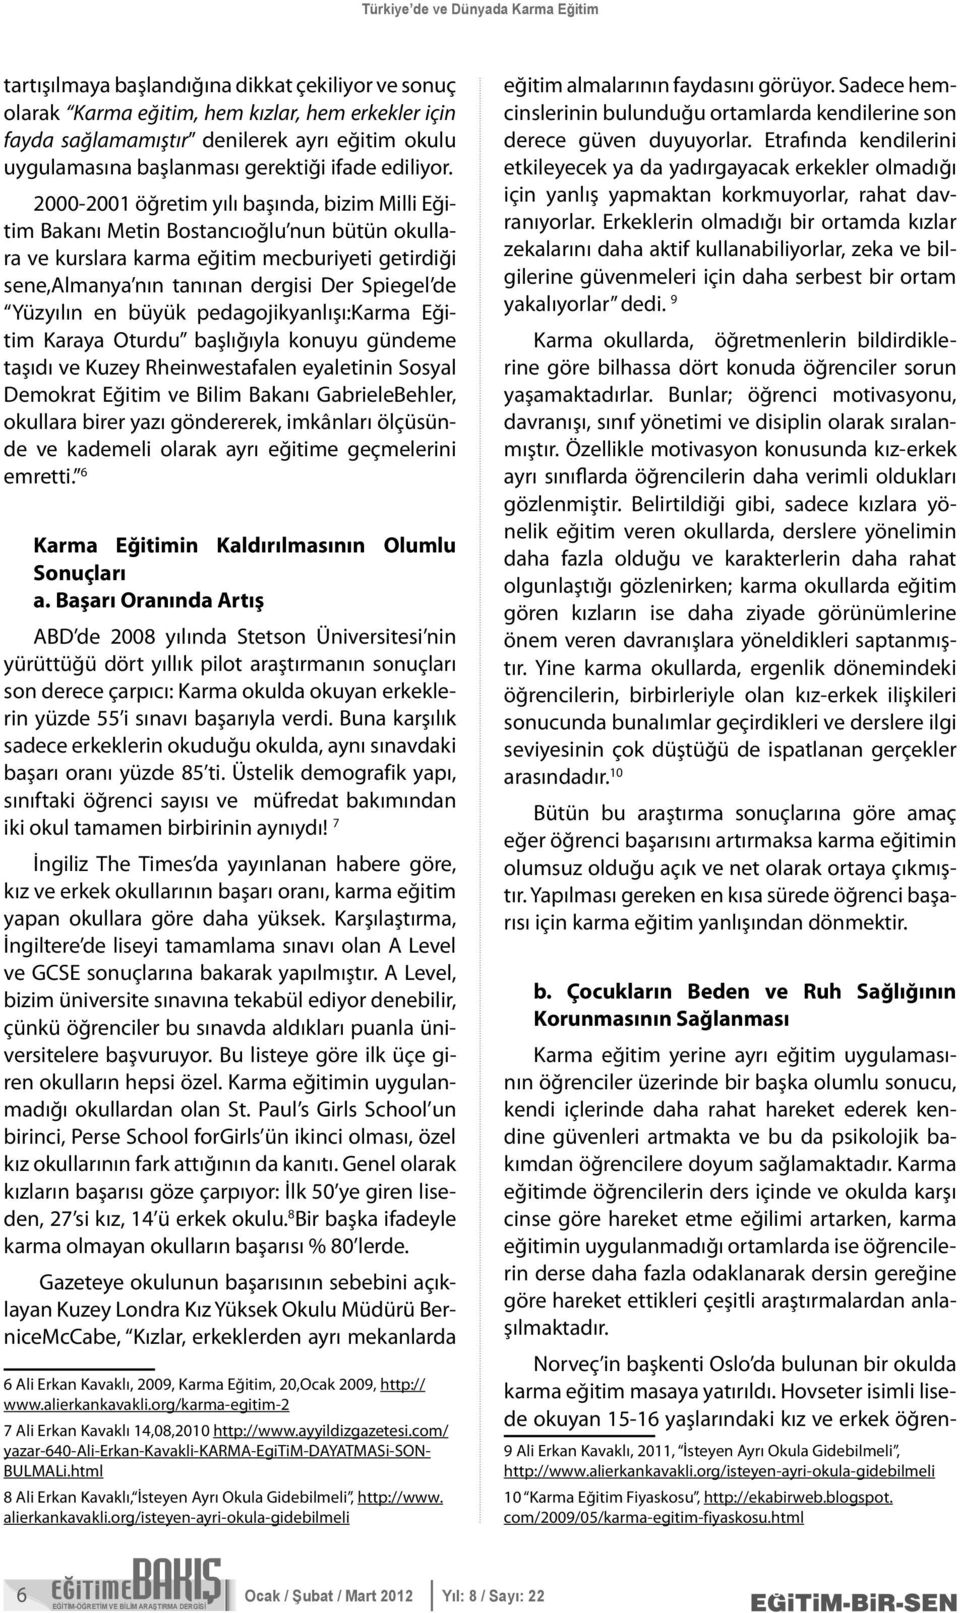 2000-2001 öğretim yılı başında, bizim Milli Eğitim Bakanı Metin Bostancıoğlu nun bütün okullara ve kurslara karma eğitim mecburiyeti getirdiği sene,almanya nın tanınan dergisi Der Spiegel de Yüzyılın